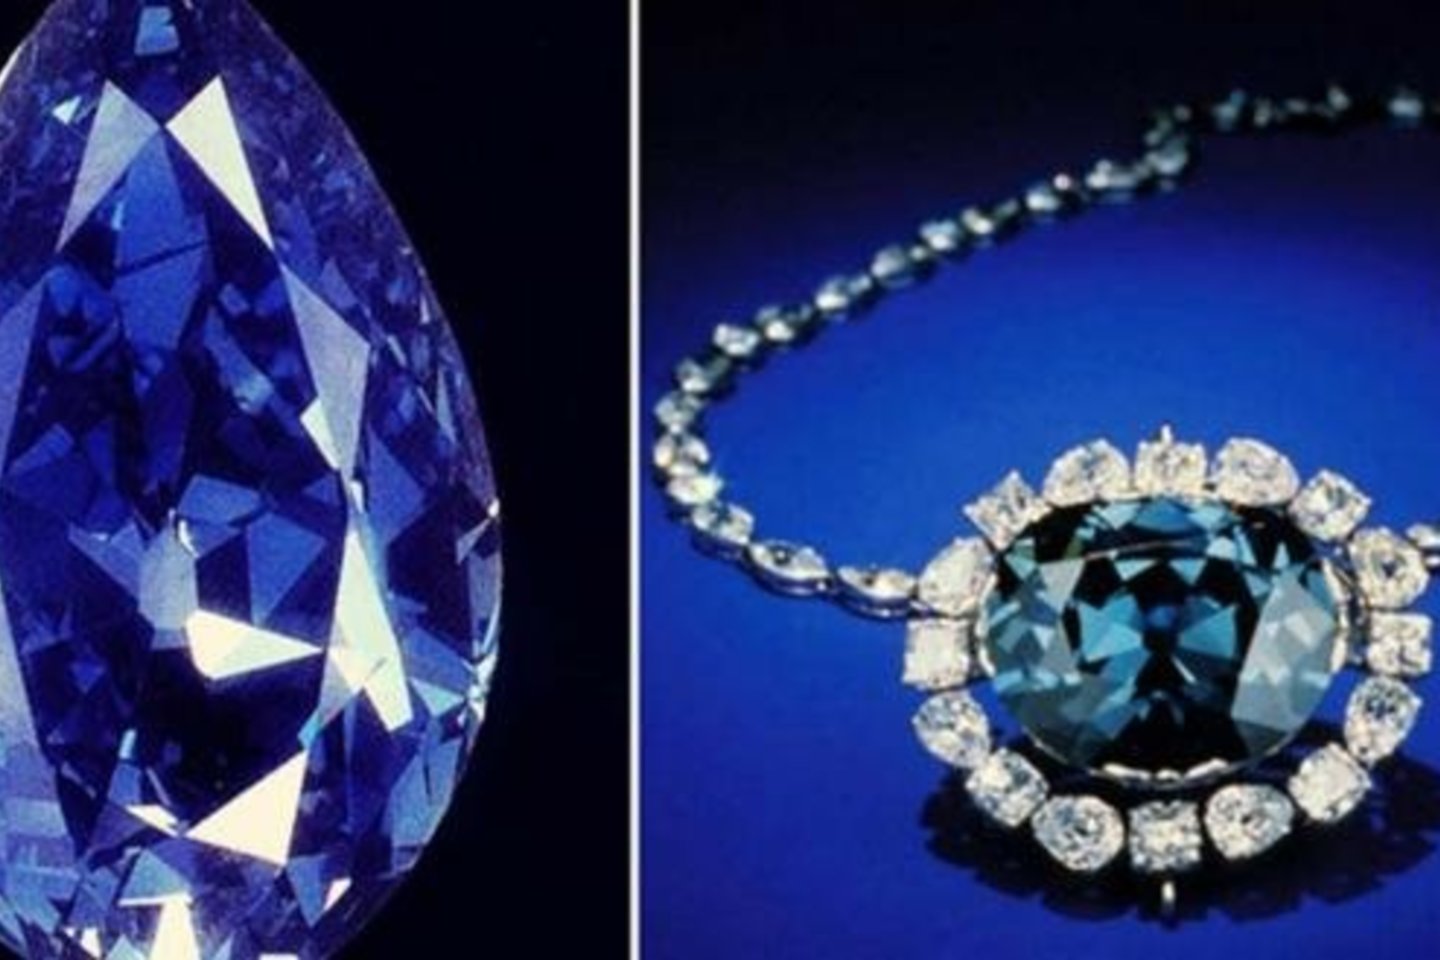 Daugelis sako, kad Vilties deimantas – vienas populiariausių brangakmenių pasaulyje – yra prakeiktas. <br>Wikimedia Commons nuotr. 